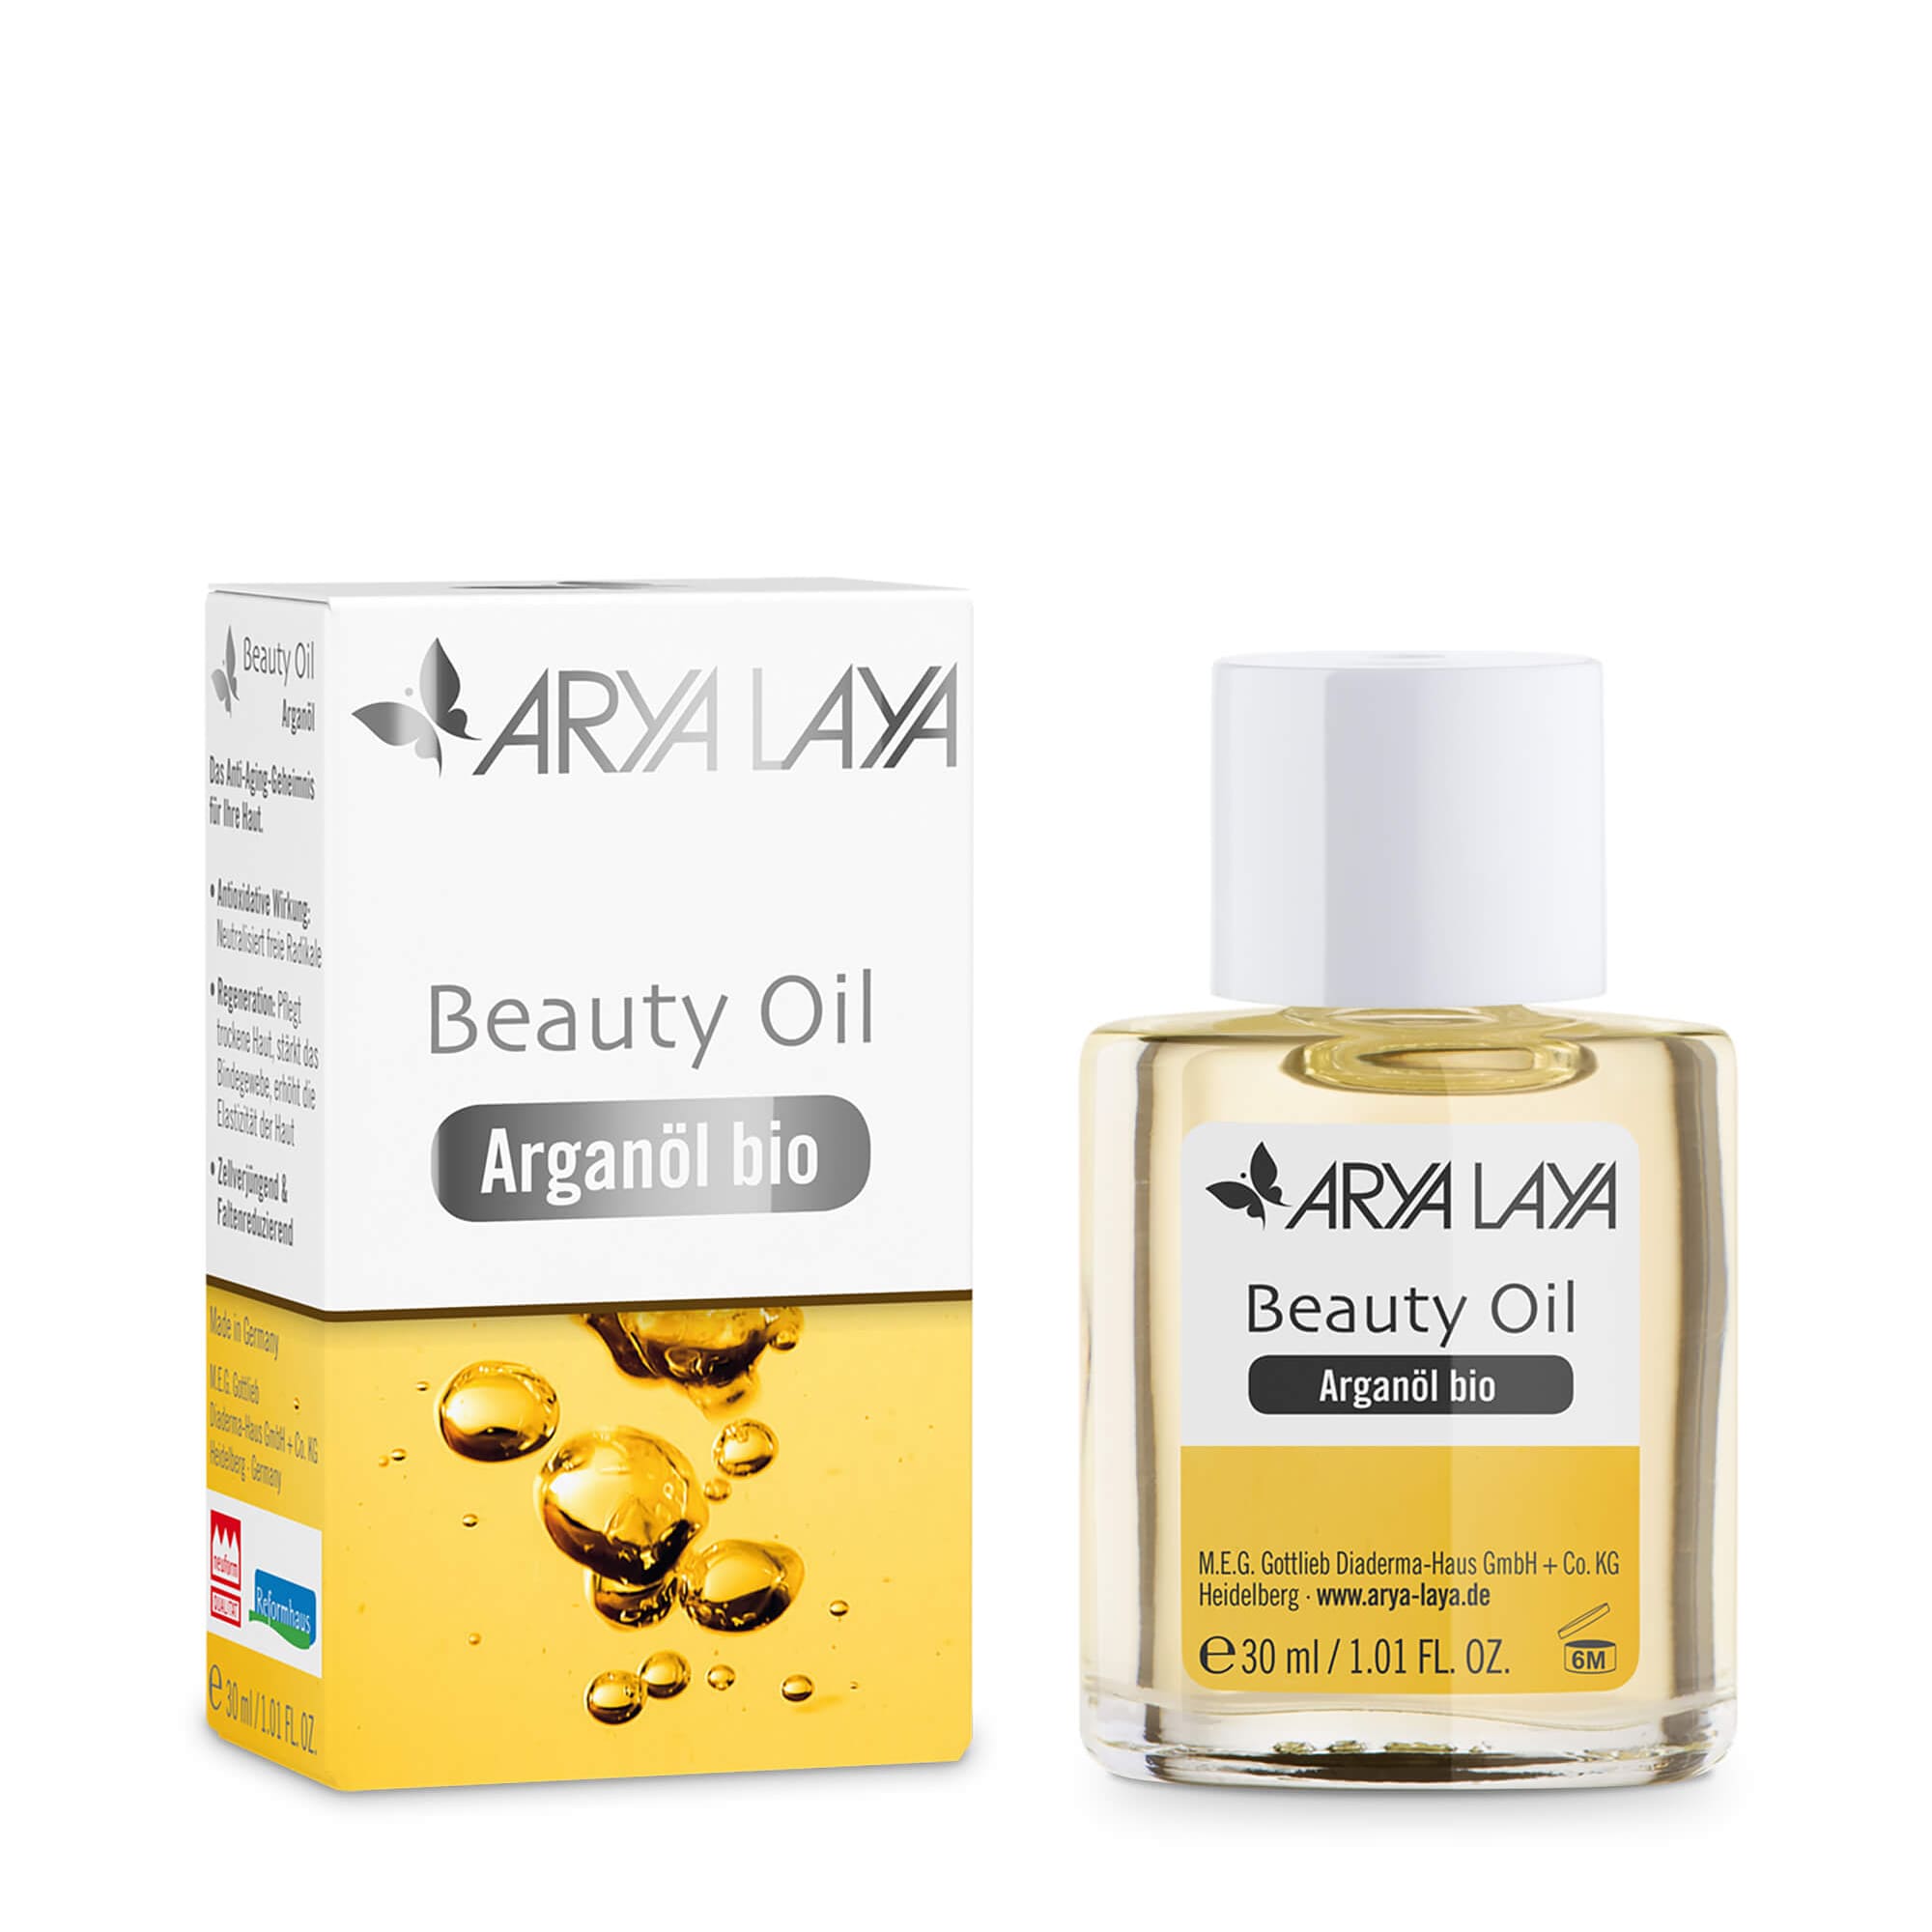 Glasfläschchen und Faltschachtel mit ARYA LAYA Beauty Oil Arganöl bio, 30 ml 